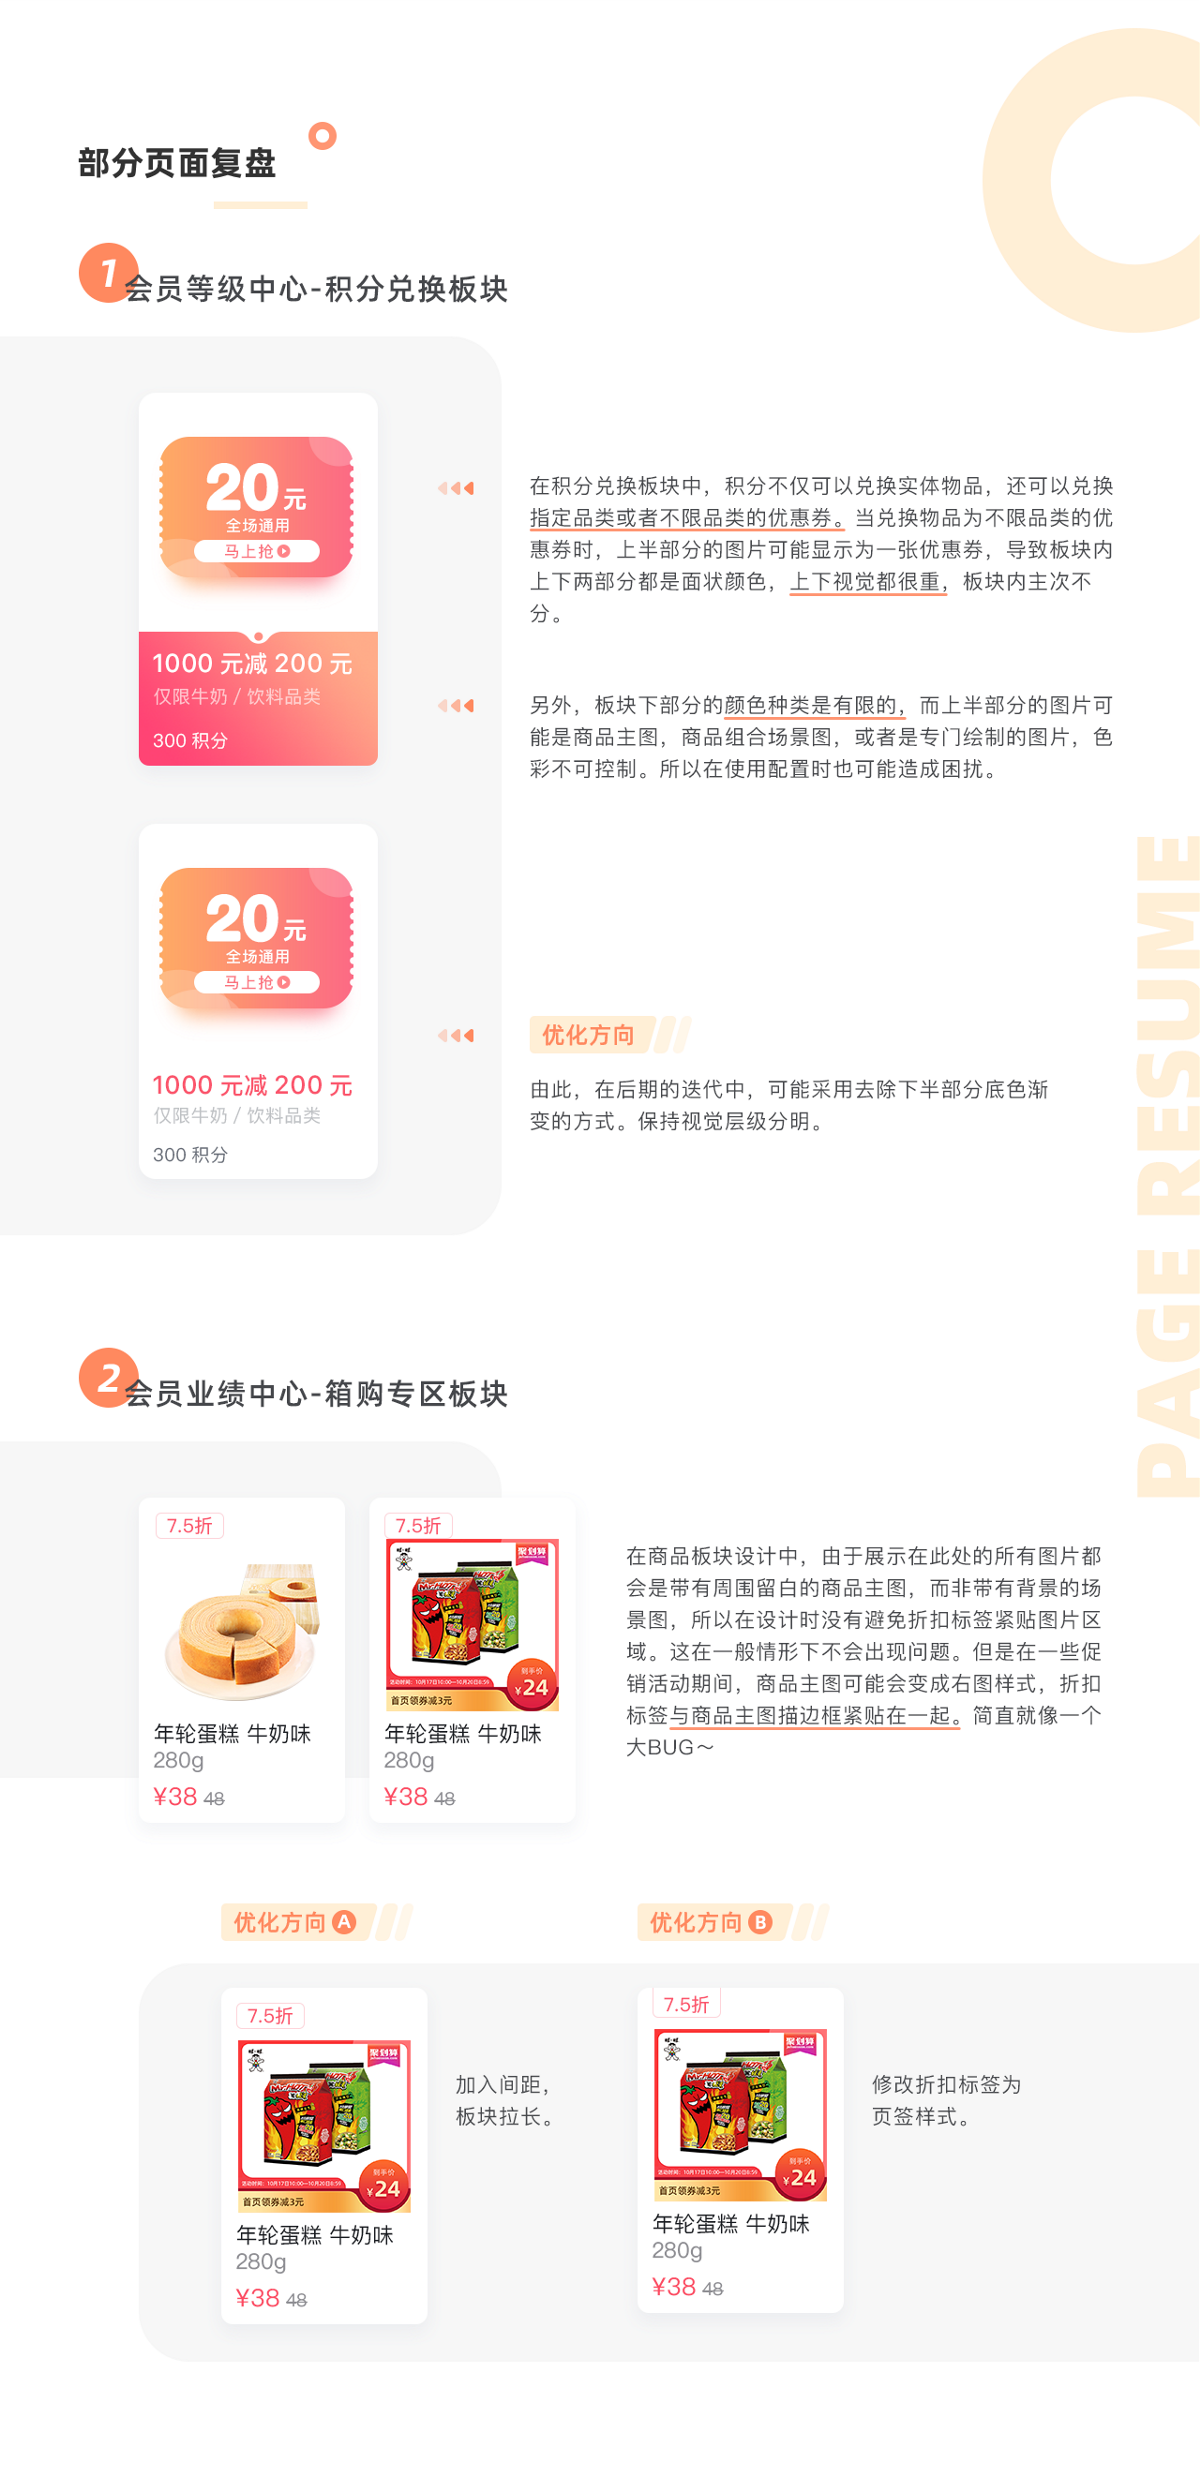 旺仔旺铺App会员中心项目总结/食品快消品电商App设计